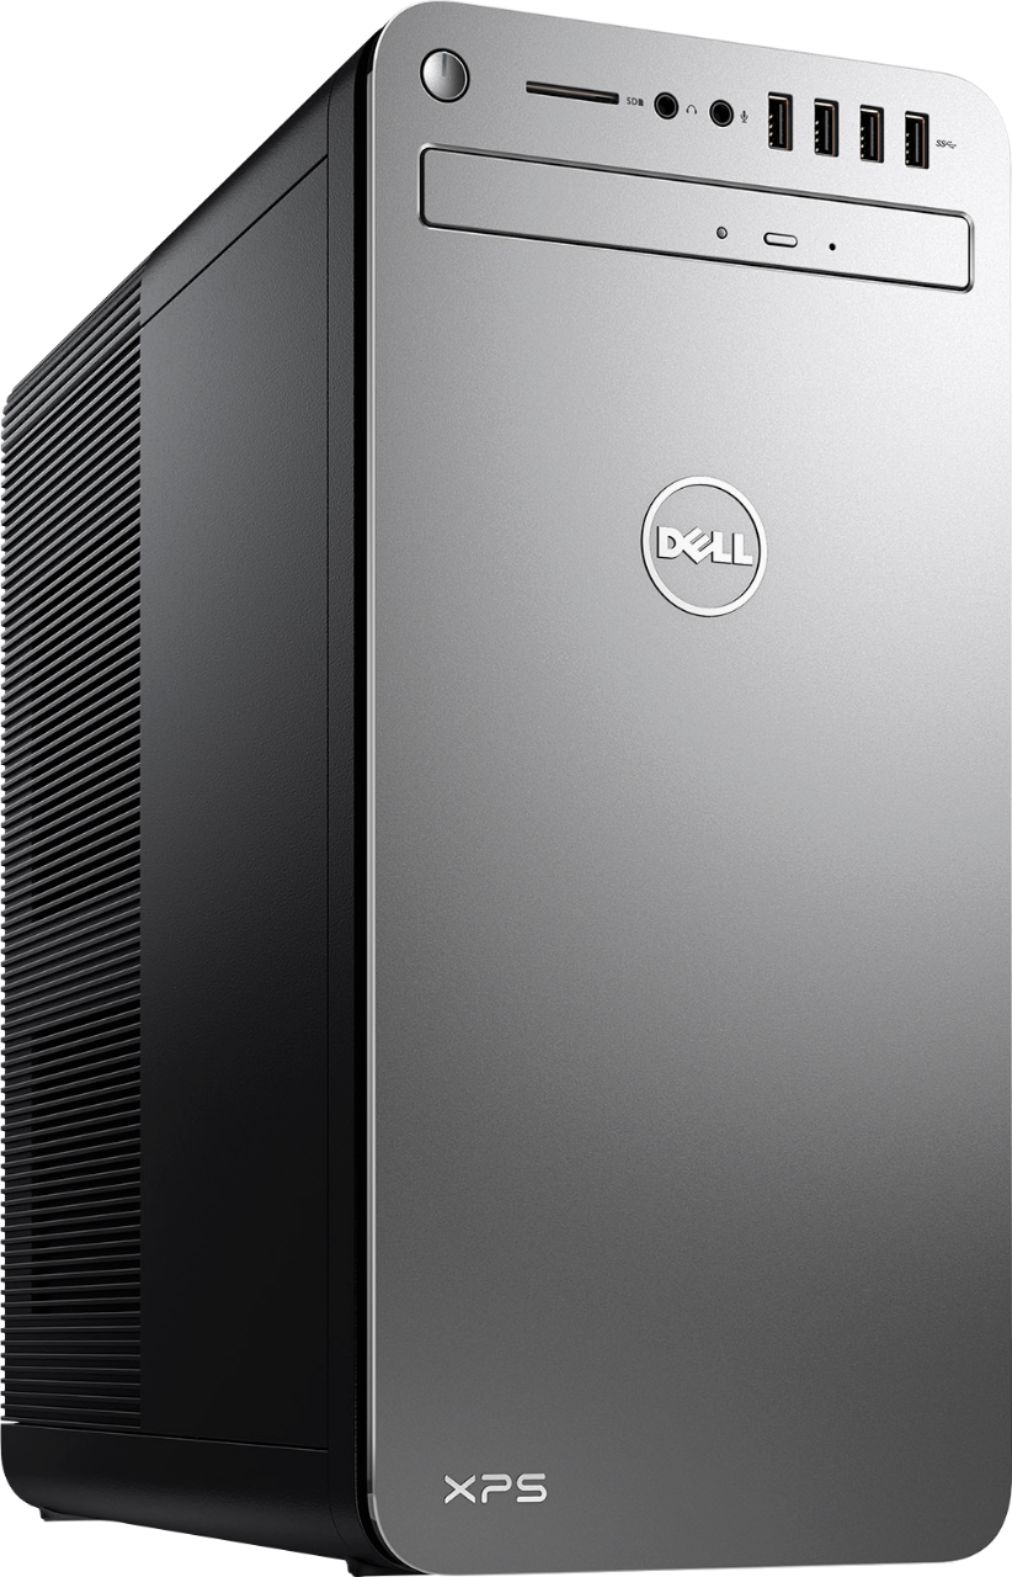 Customer Reviews: Dell XPS Desktop Intel Core i7 7700 16GB Memory 